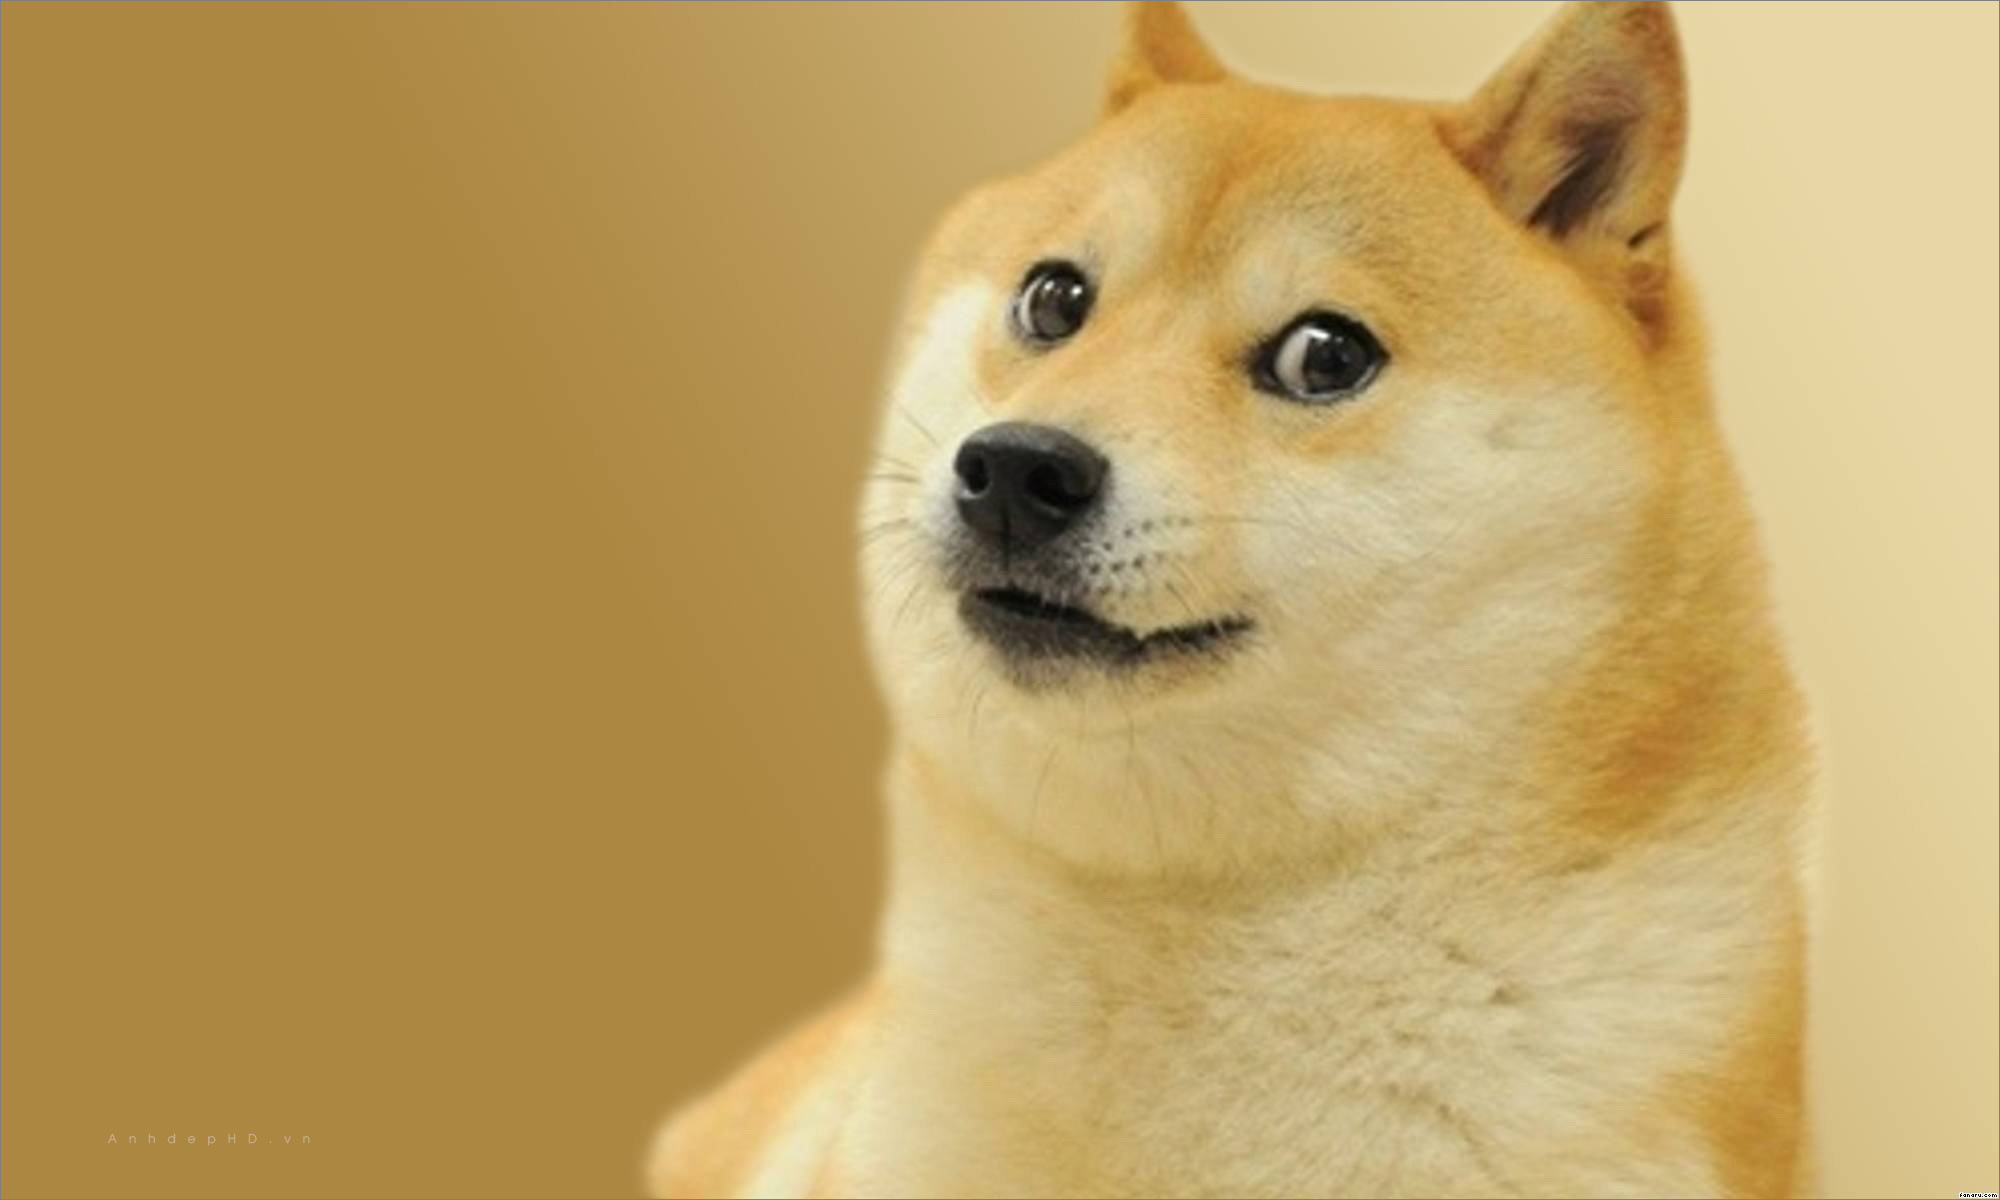 Chó Shiba: Hãy đến và tìm hiểu về giống chó Shiba đáng yêu này. Với bộ lông nhuộm cam hoặc đỏ nổi bật, chúng là một trong những giống chó được yêu thích nhất ở Nhật Bản và trên toàn thế giới.